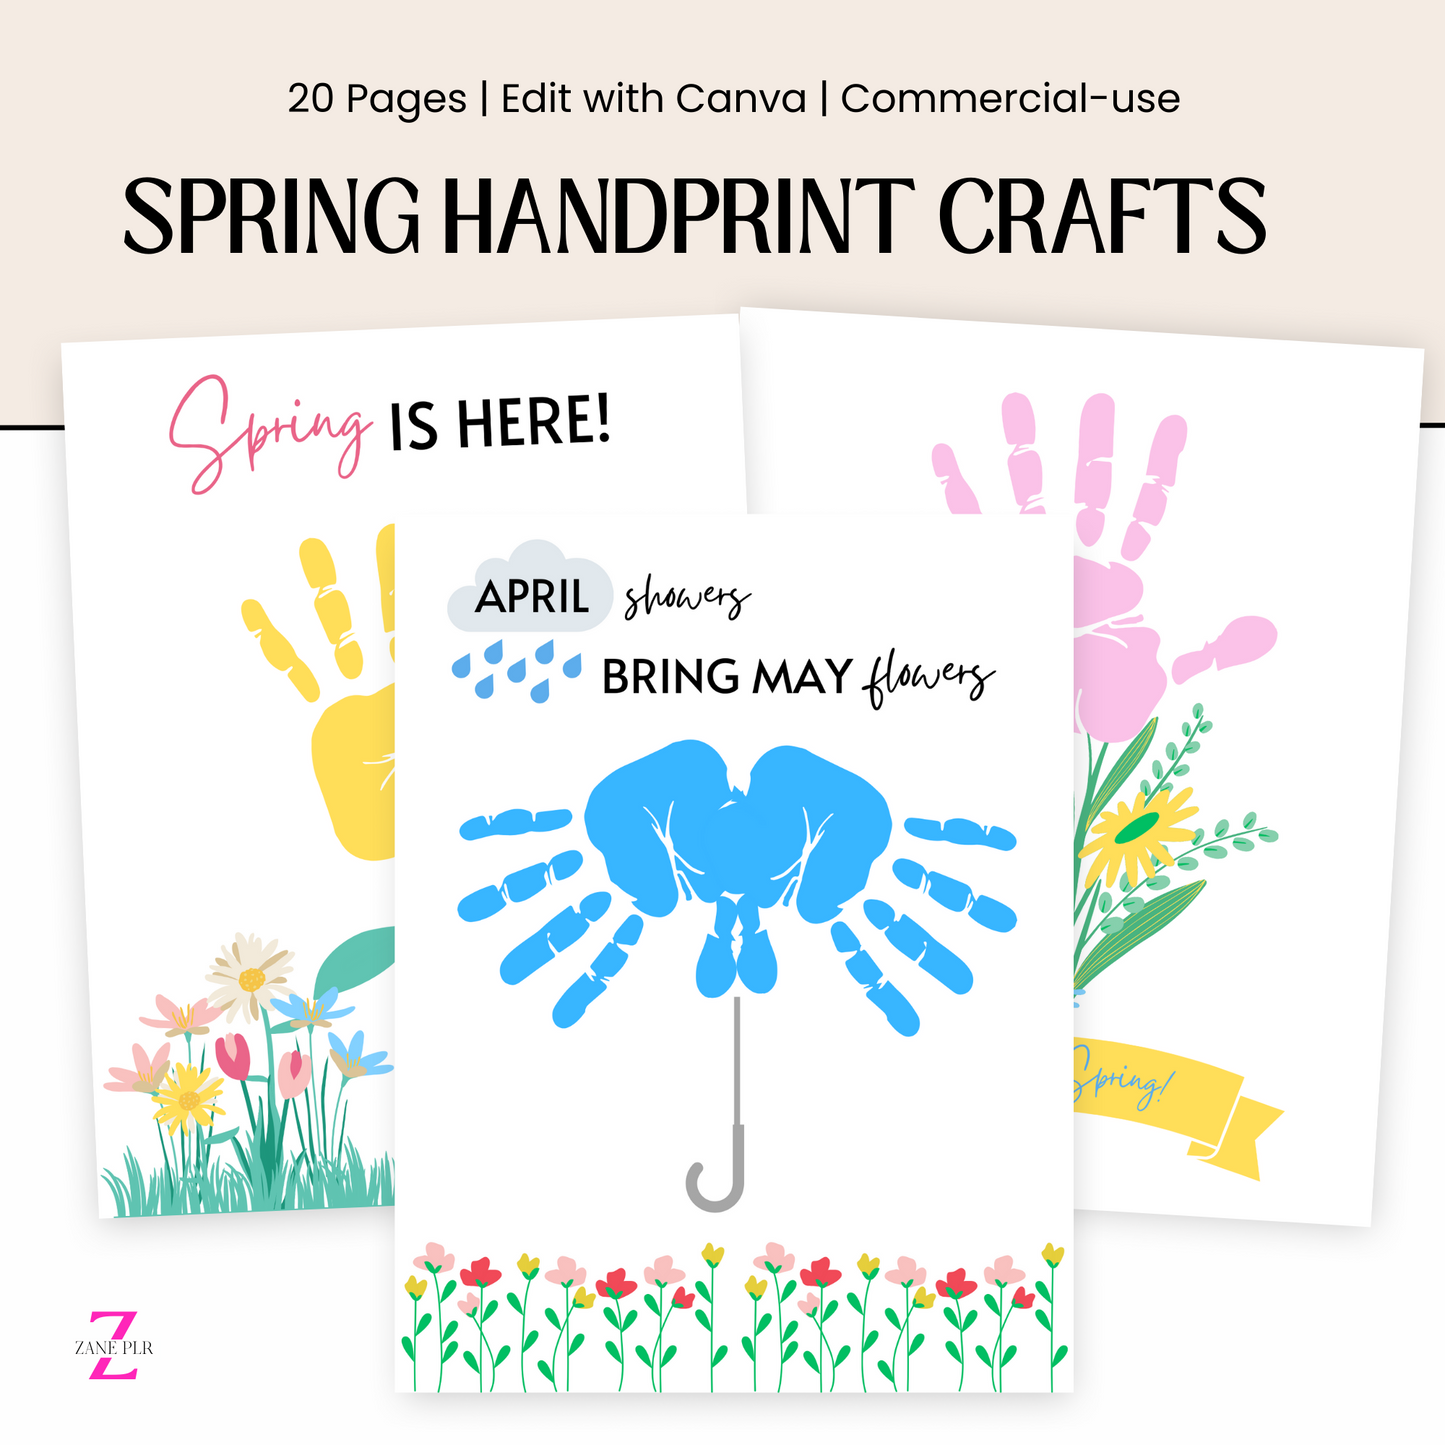 PLR Spring Handprint Crafts